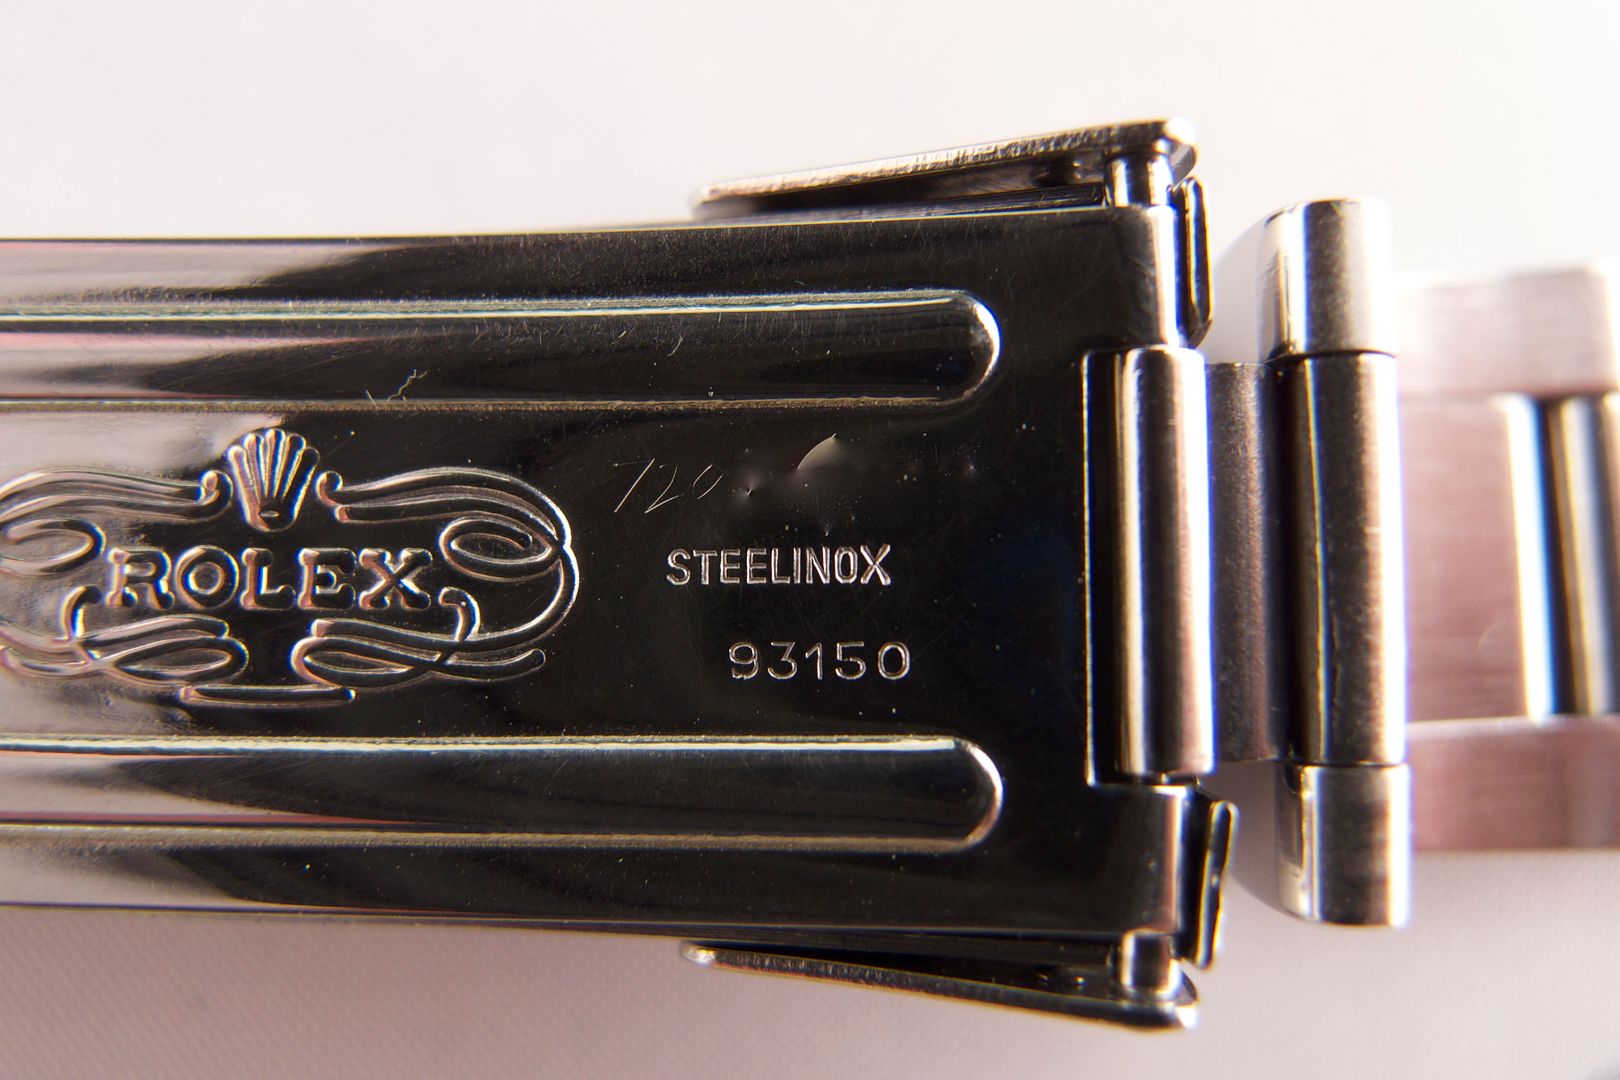  engraved serial number on Rolex 16800 Submariner 93150 bracelet